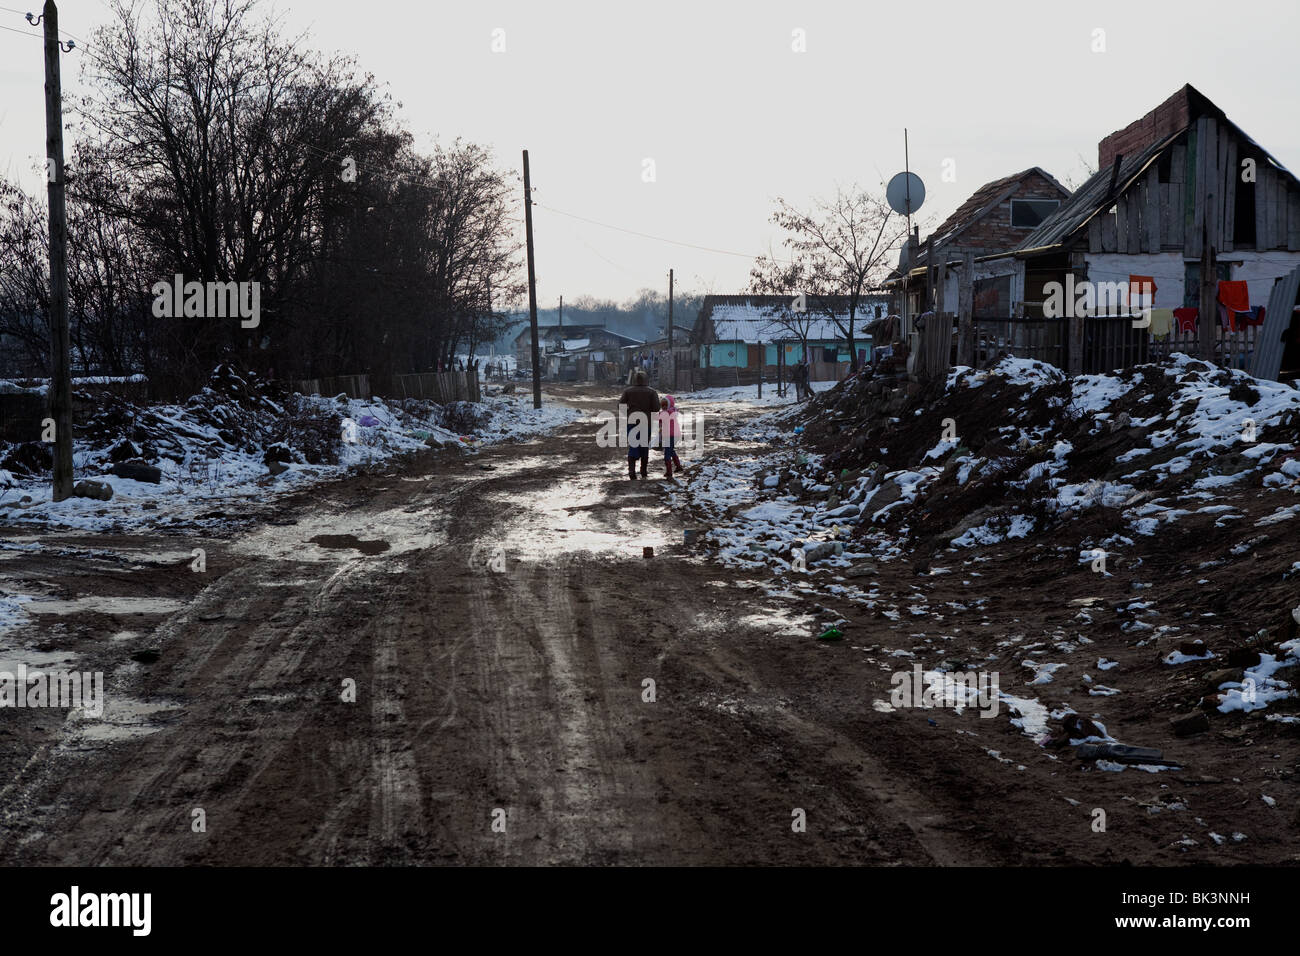 El empobrecido distrito romaní de Arad, apodado 'Apple' Street. Una familia hacen su camino a través de la nieve y barro. Foto de stock